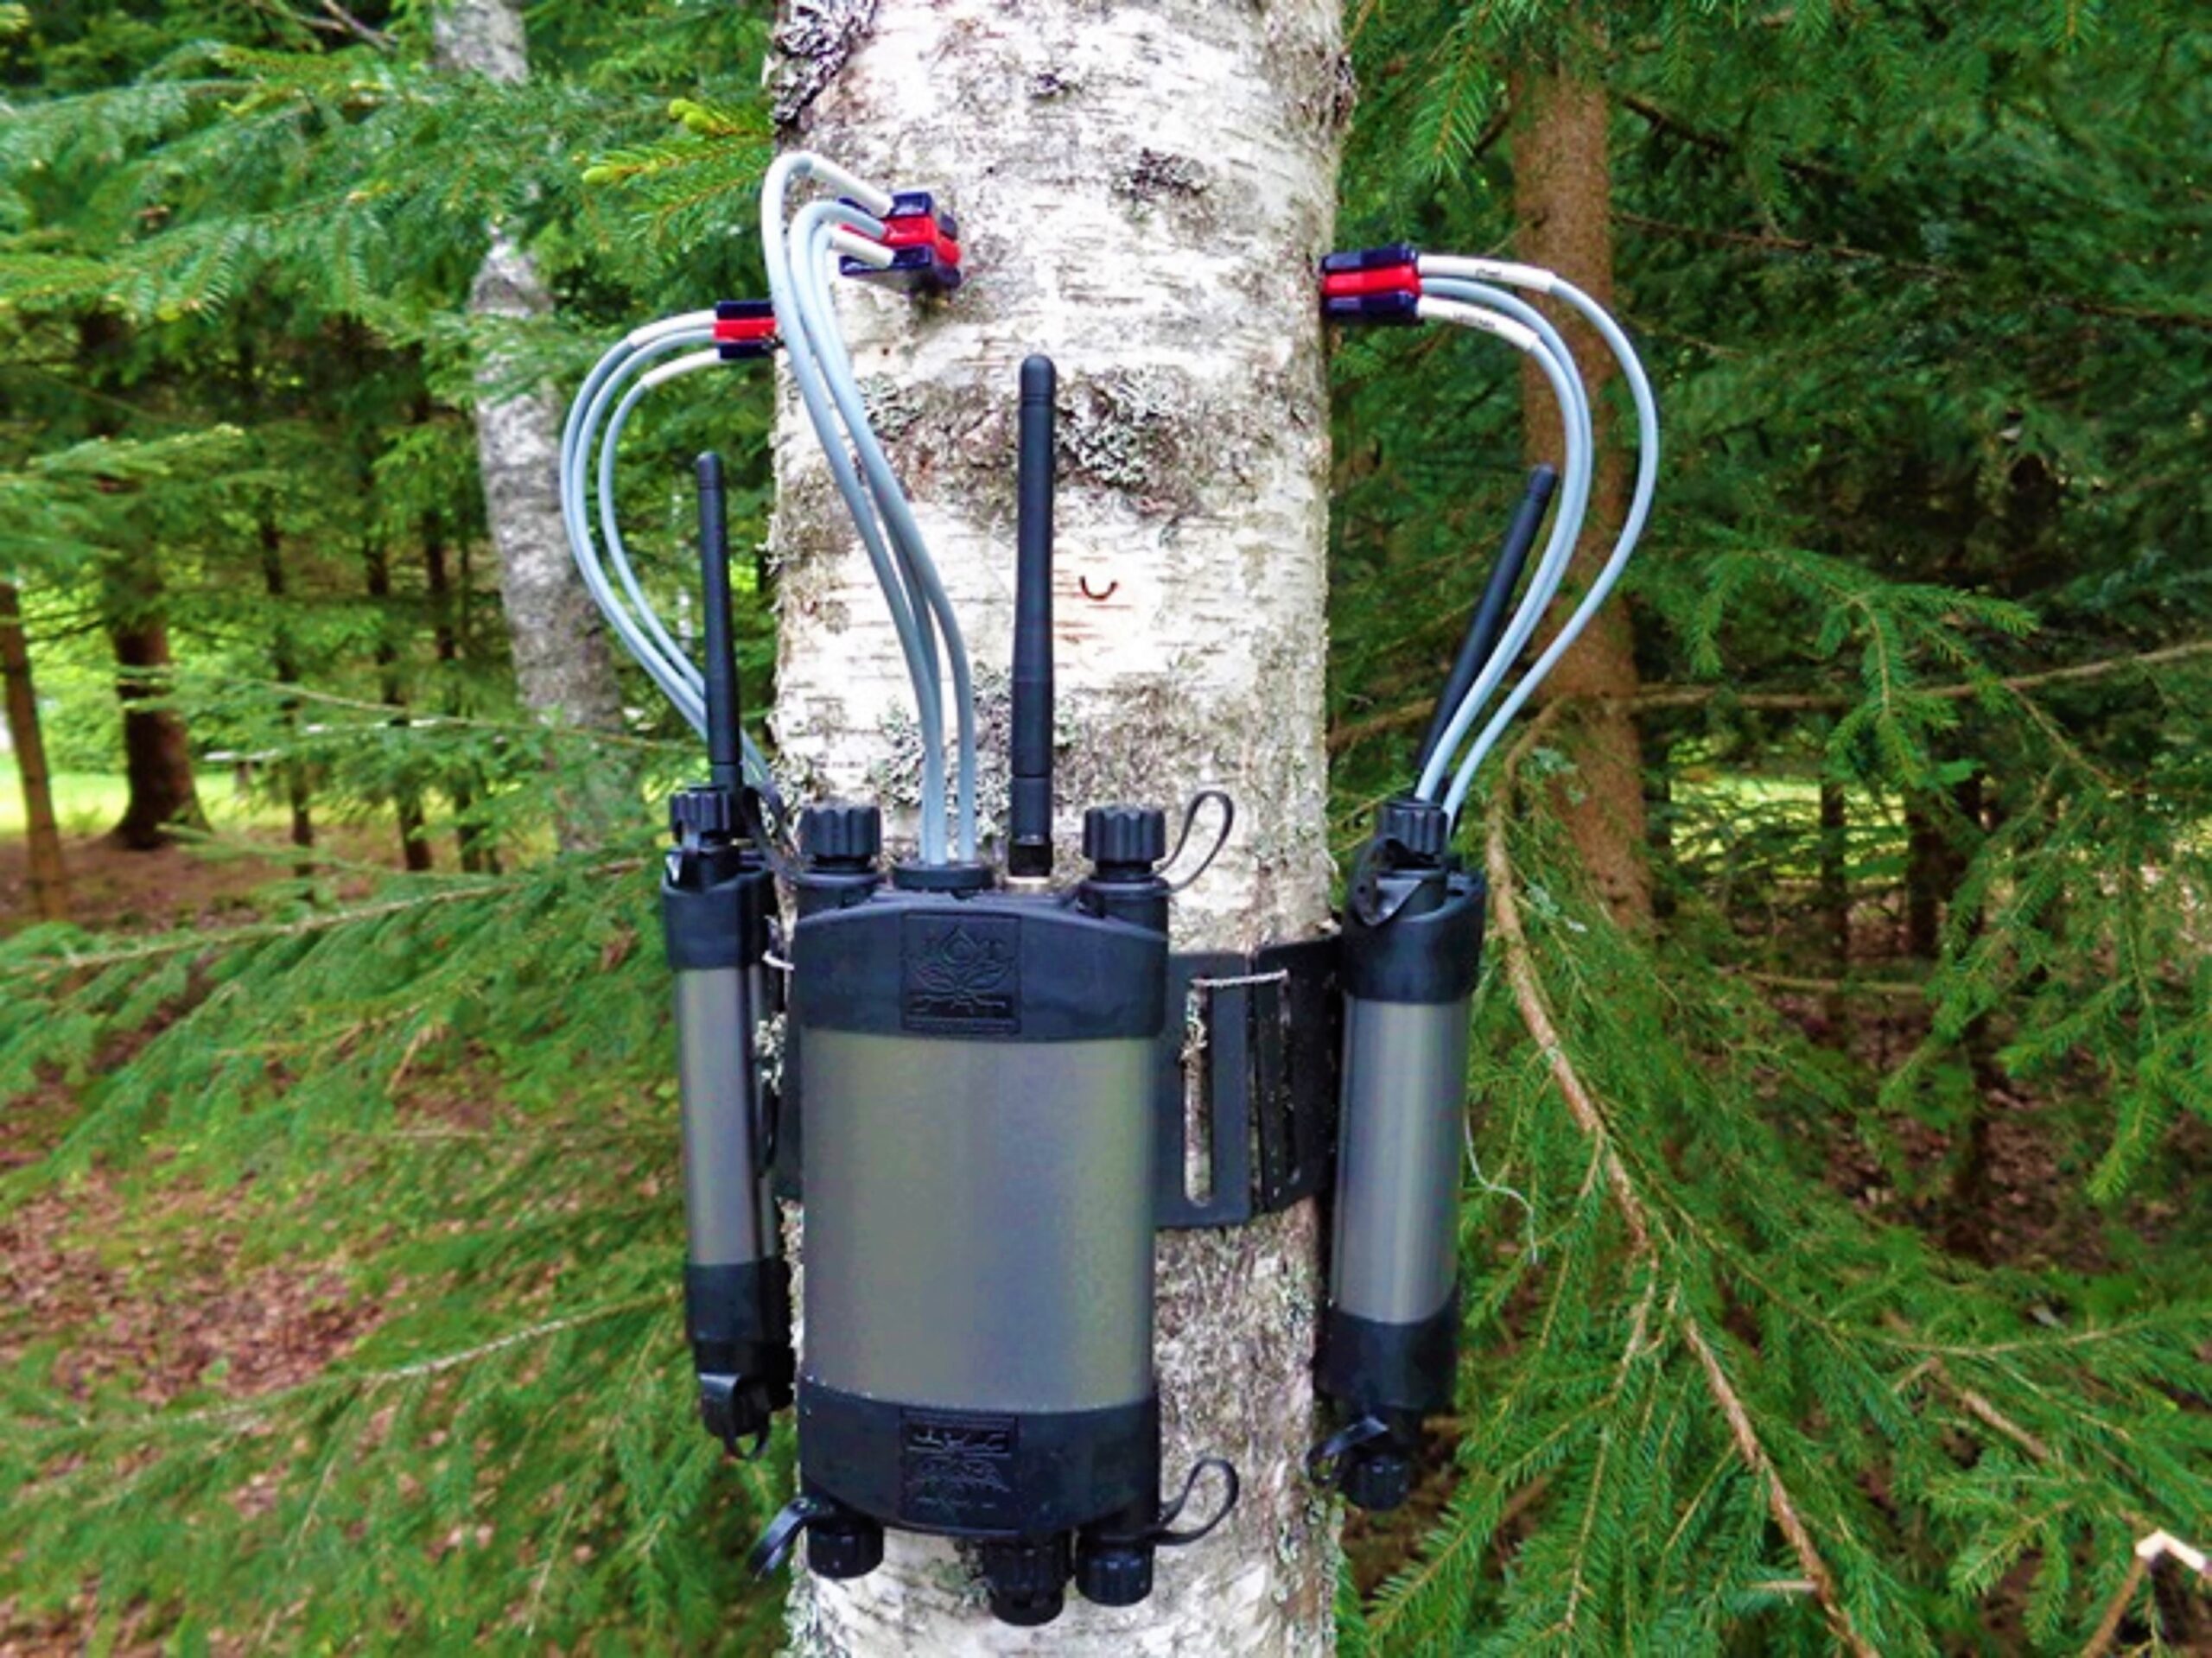 Sap flow meter used to gauge water use in trees